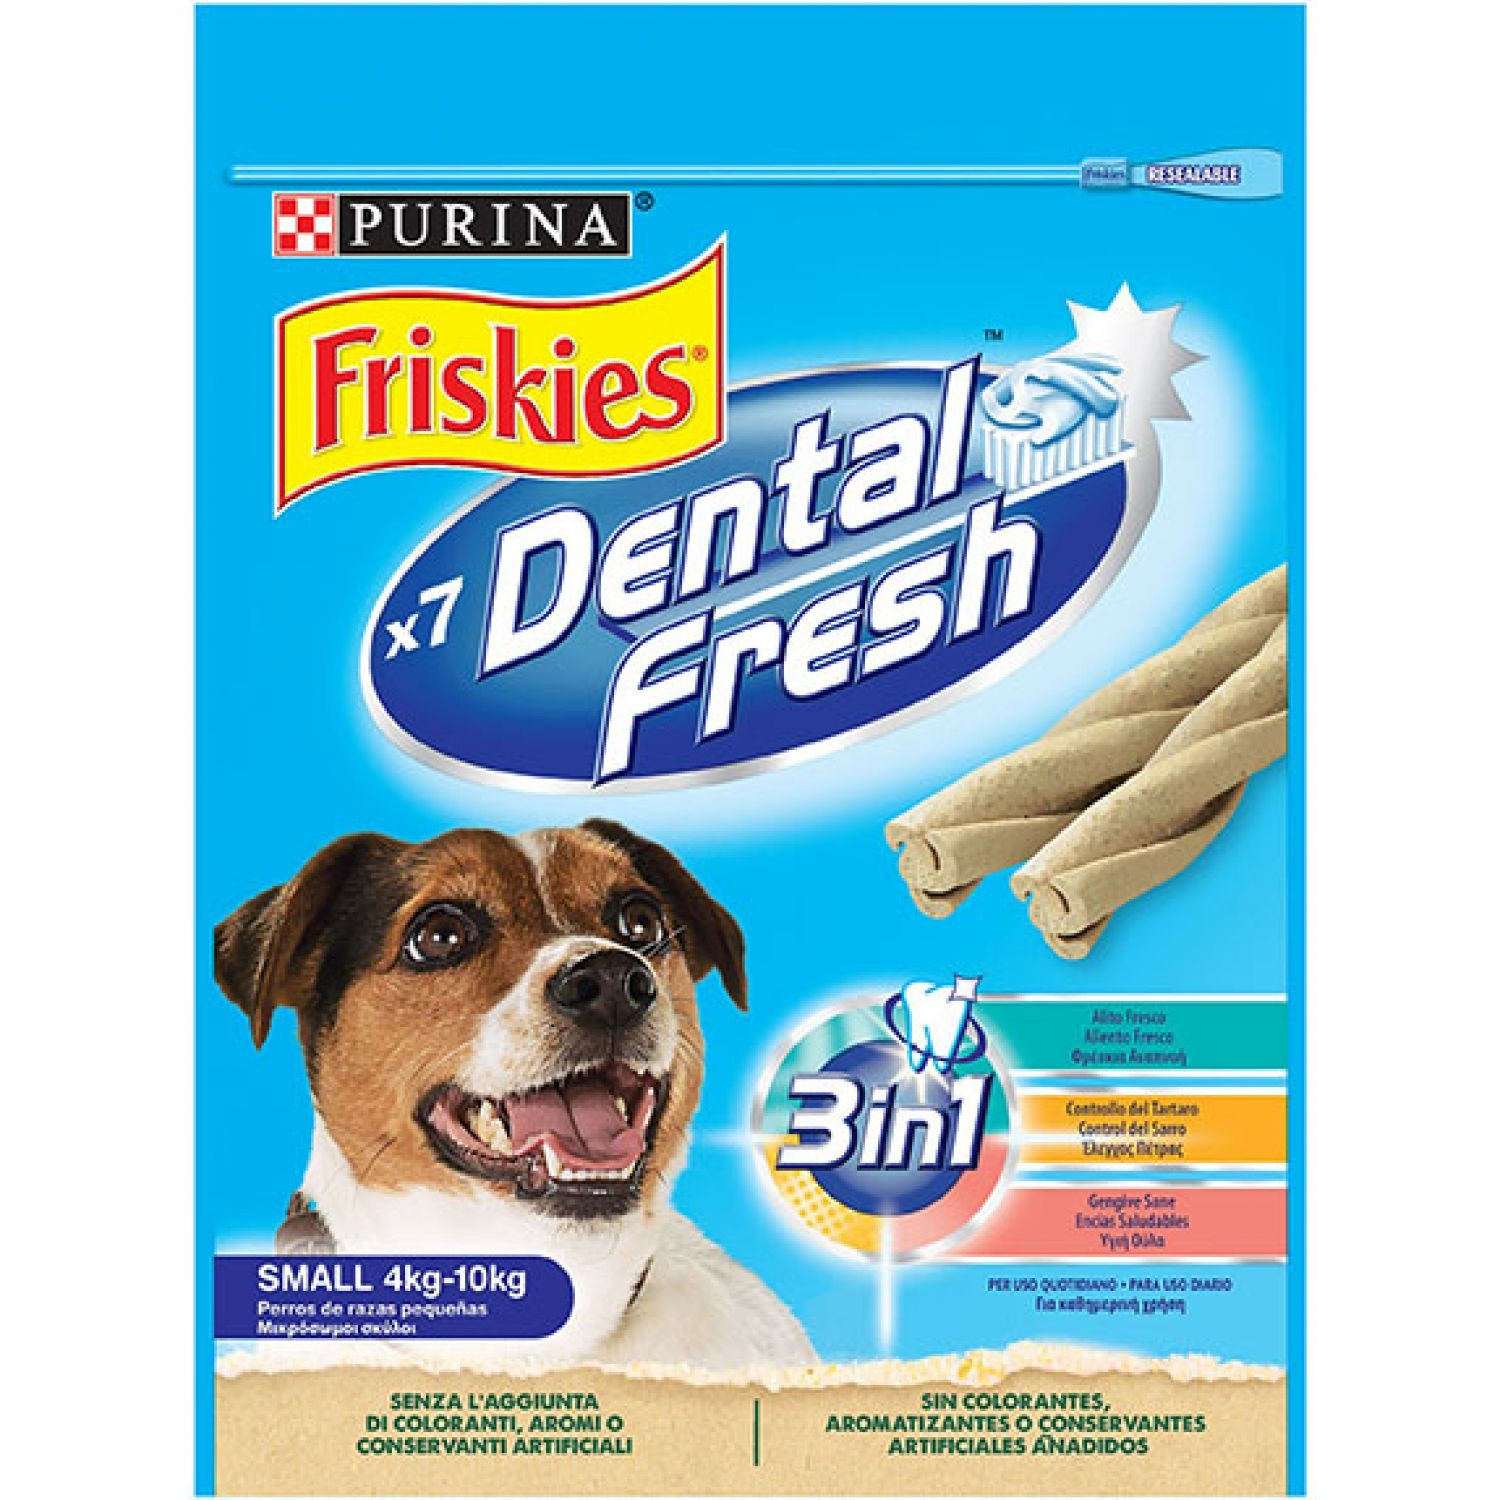 Hondensnack Friskies Dental Fresh met munt